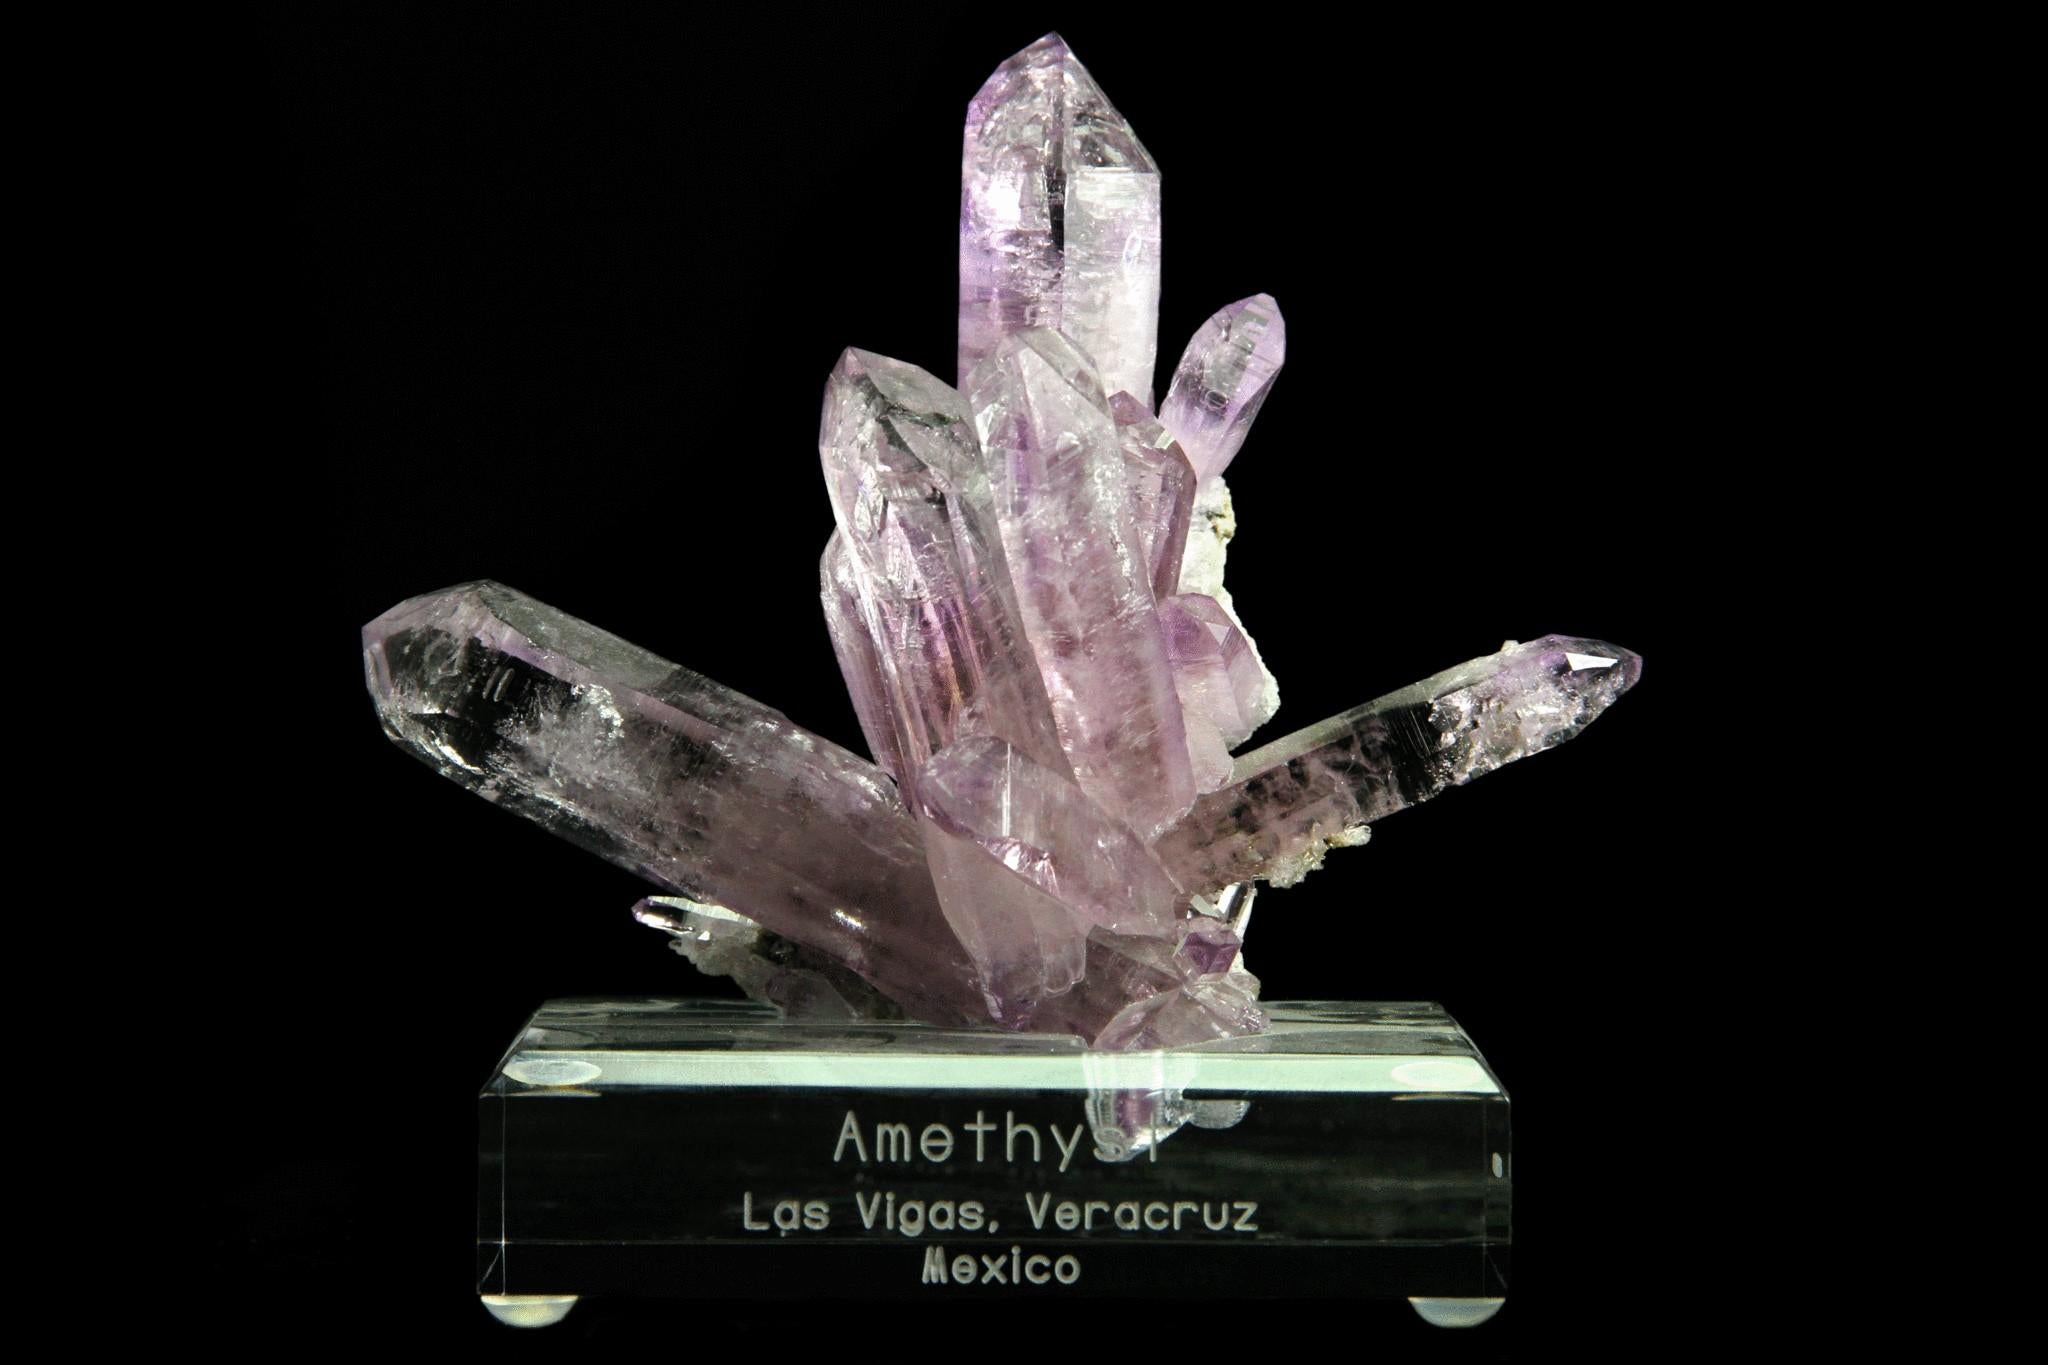 Von Piedra Parada, Las Vigas de Ramirez, Veracruz, Mexiko

 

Glänzende, scharfkantige Amethystkristalle, die in alle Richtungen schießen. Die Kristalle haben eine gleichmäßige, mittelviolette Farbe und einen hohen Glasglanz. Die Kristalle sind an